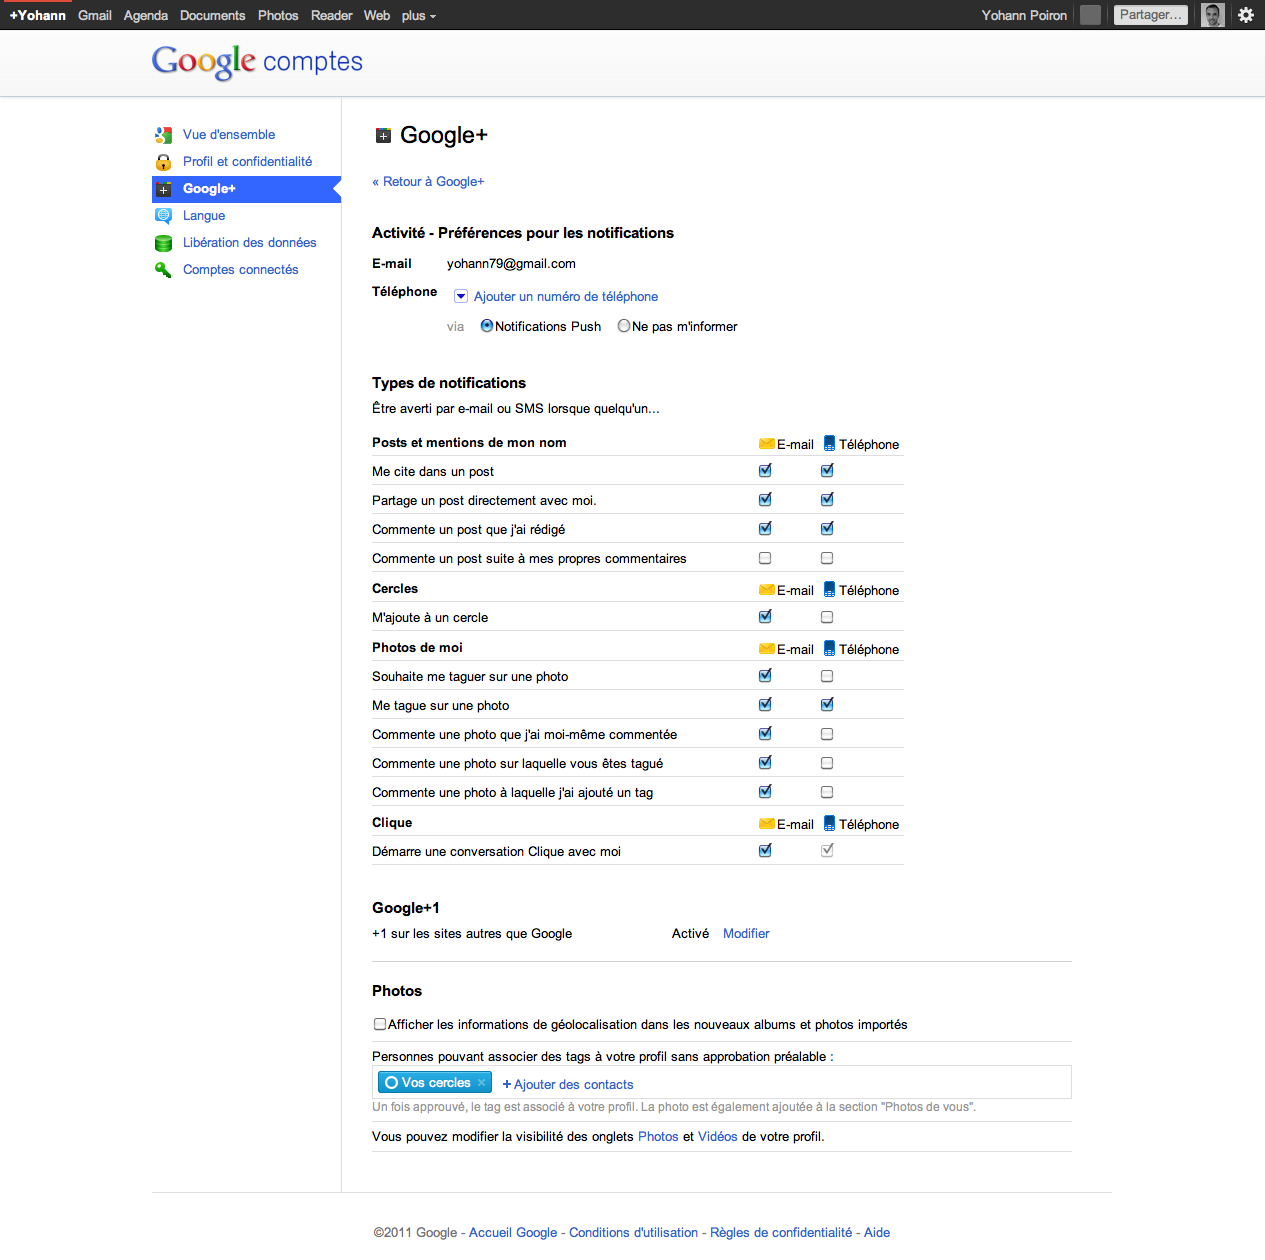 Débuter avec Google+, voici votre guide complet - Notifications Google+